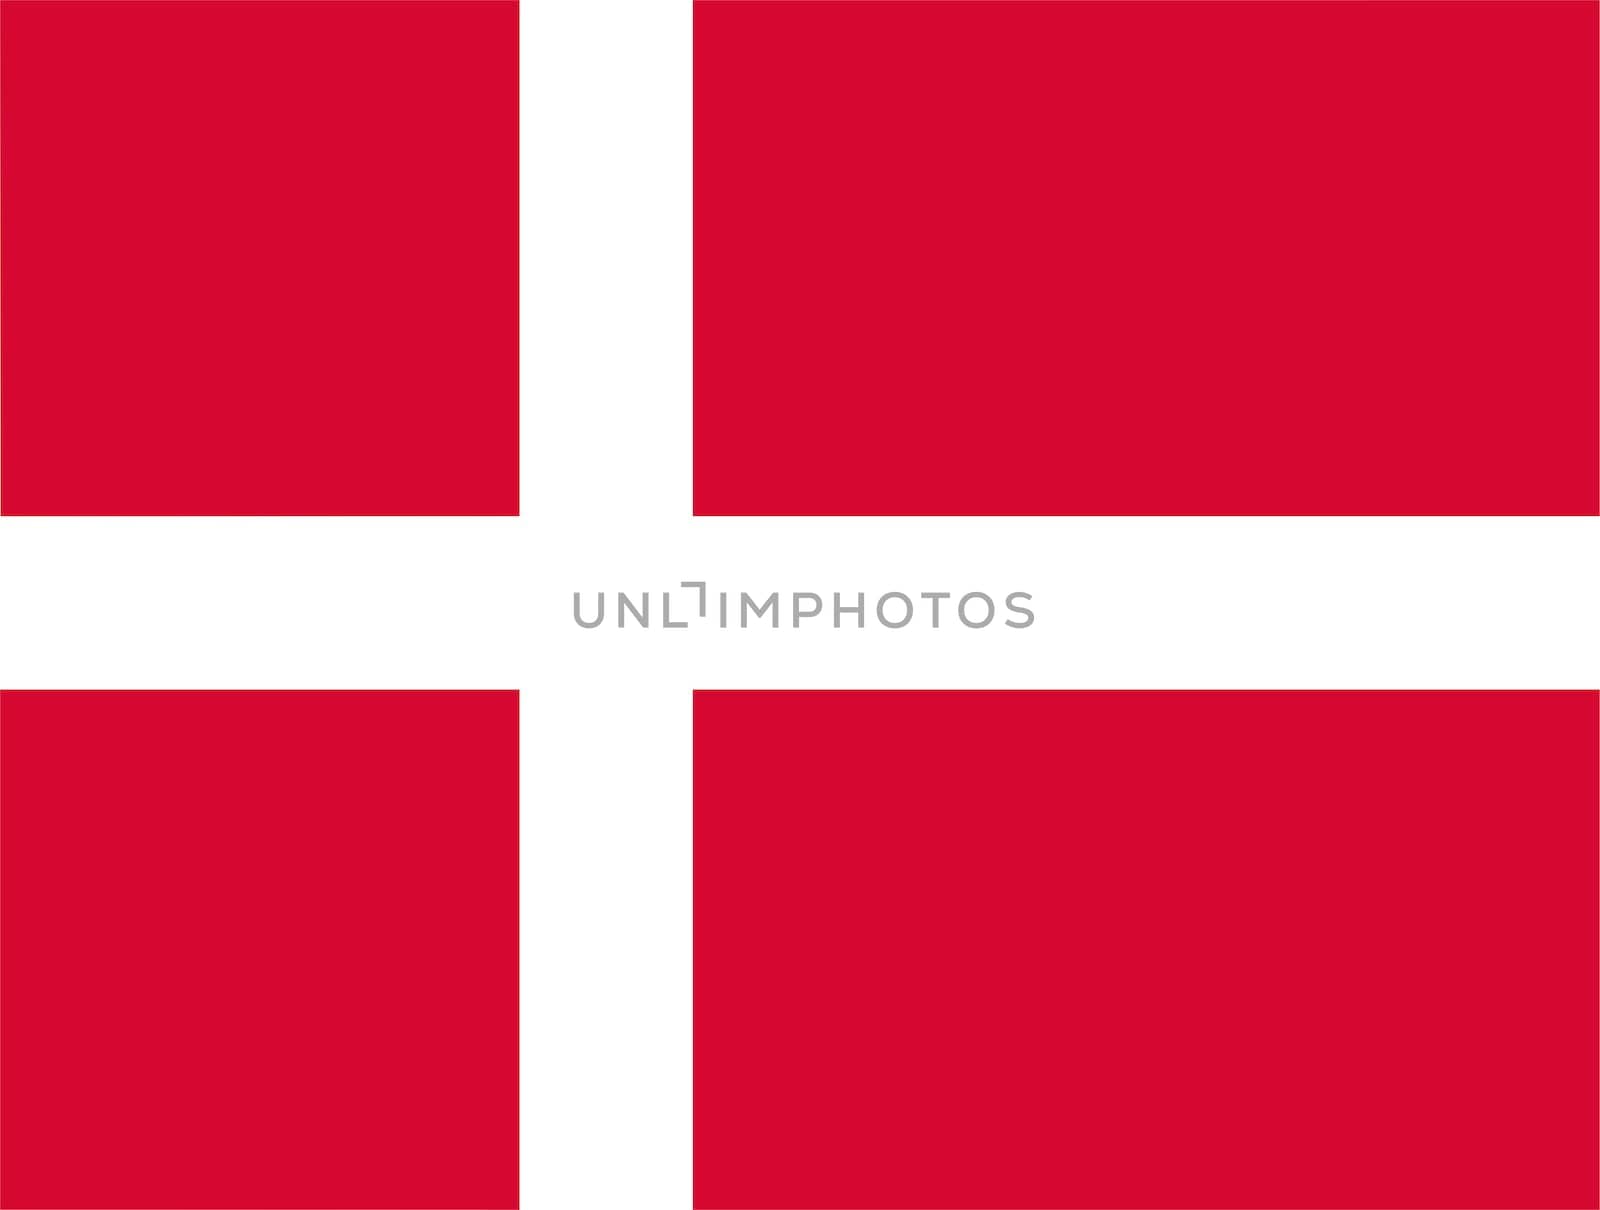 2D illustration of the flag of Denmark vector